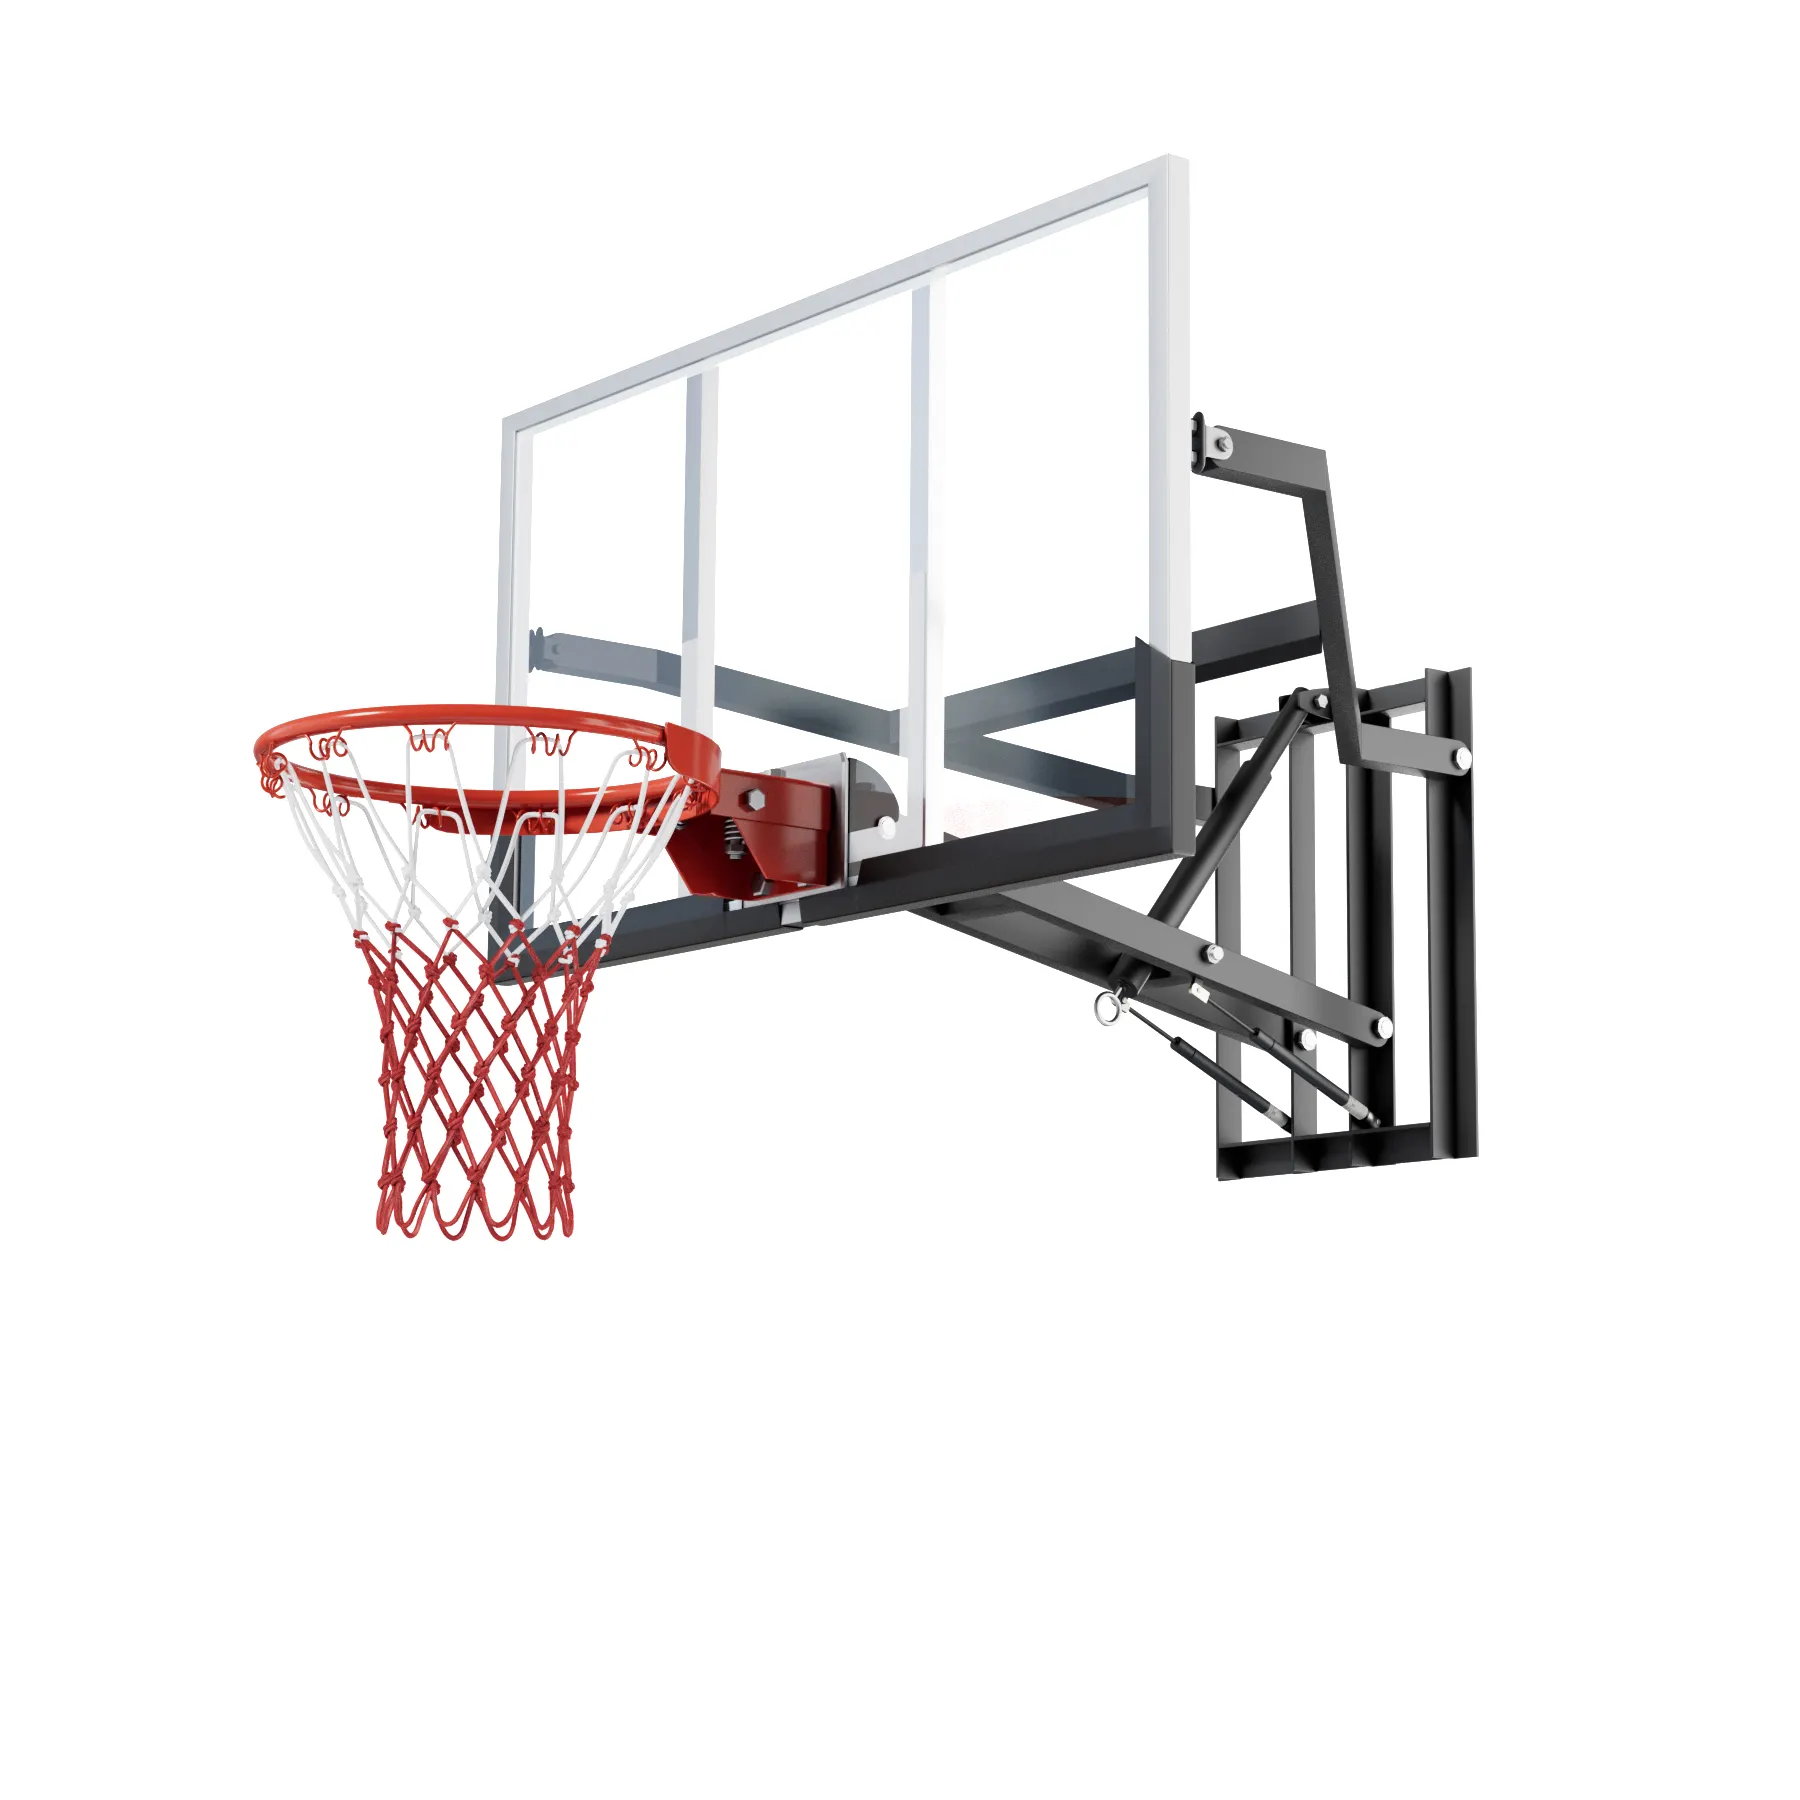 핸드 크랭크 리프팅 농구 스탠드 벽걸이 형 QuickPlay 디자인의 높이 및 고정 농구 후프